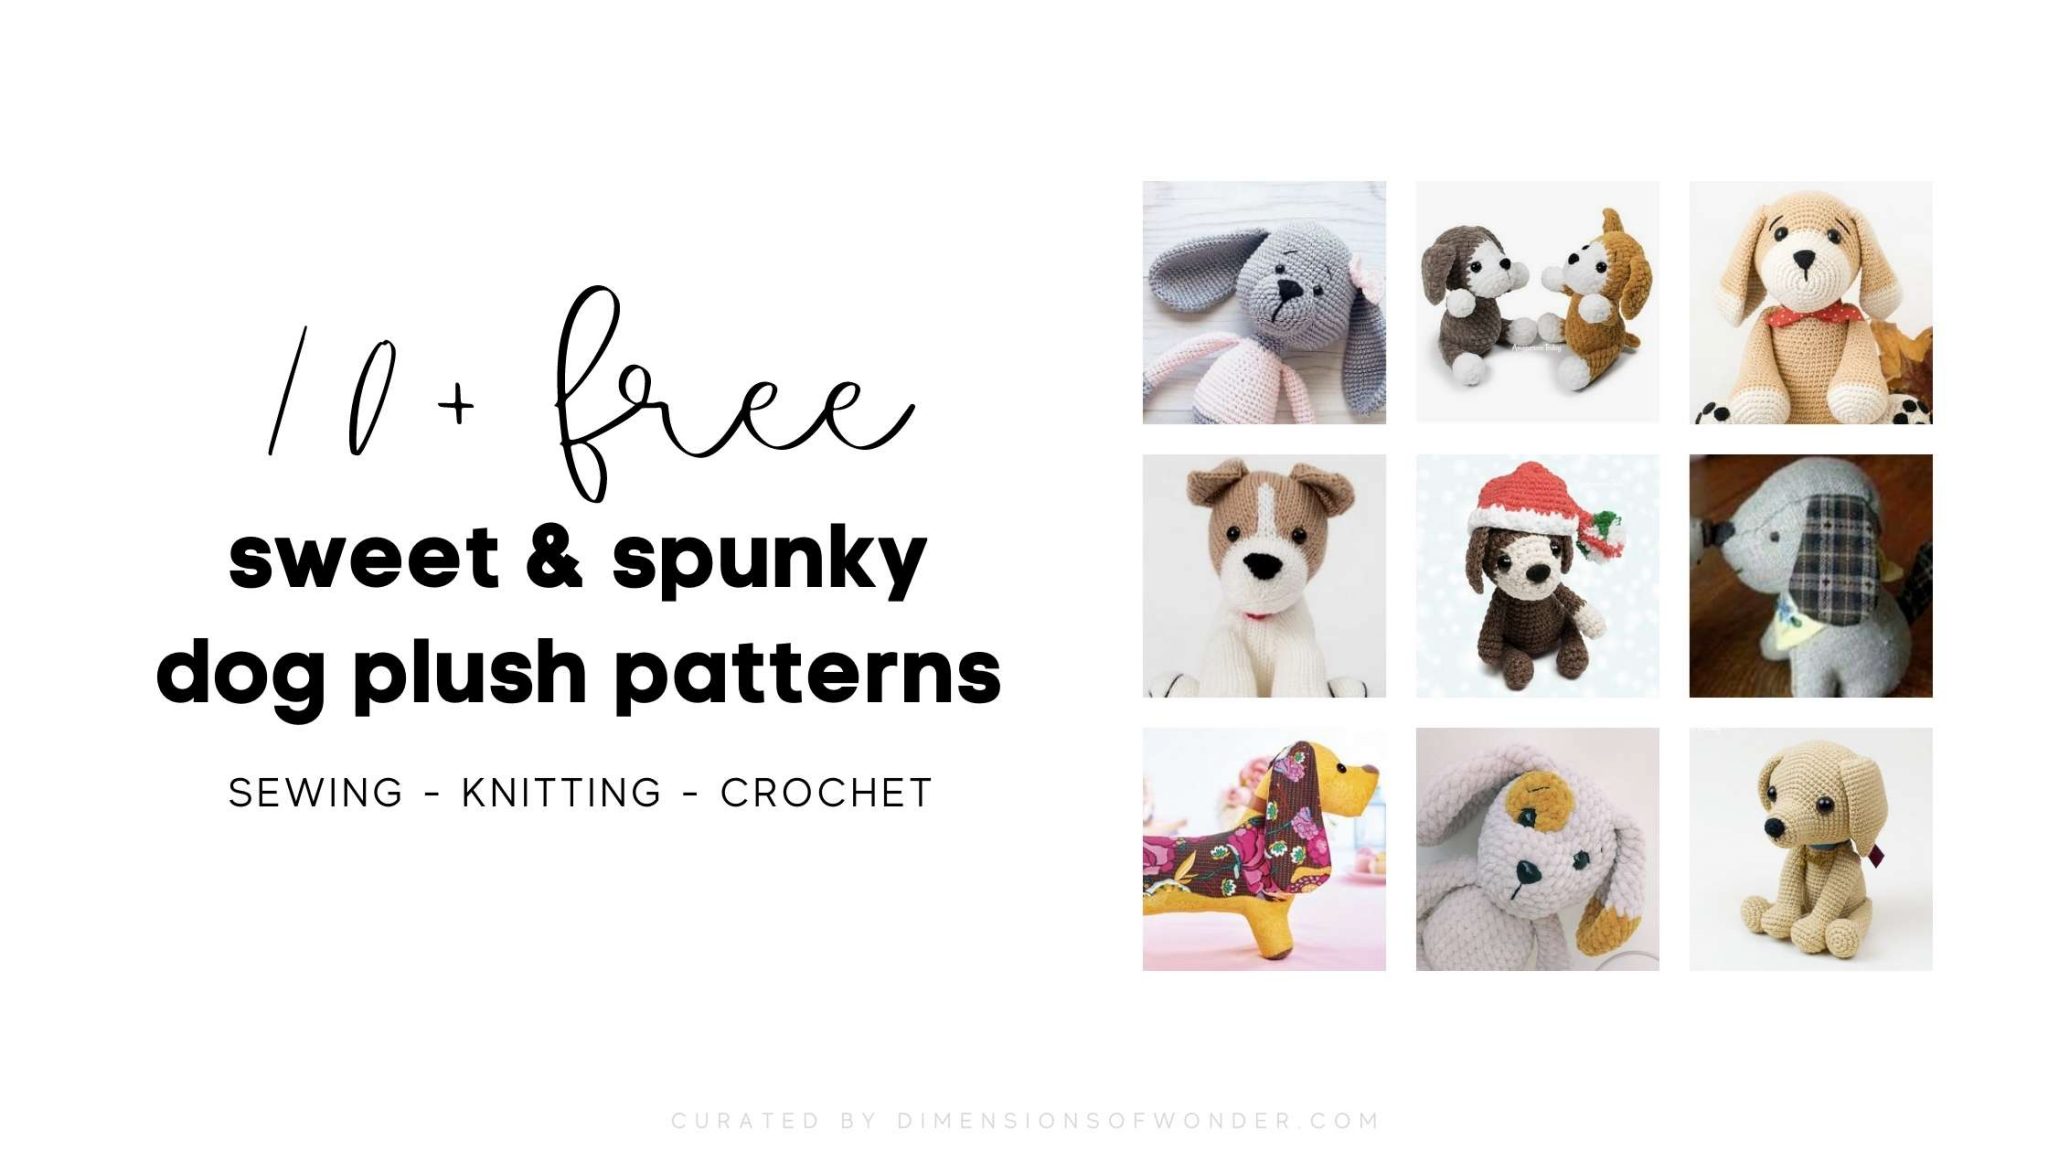 15+ Dog Plush Patterns: The Cutest (Free) Stuffed Dogs To Make